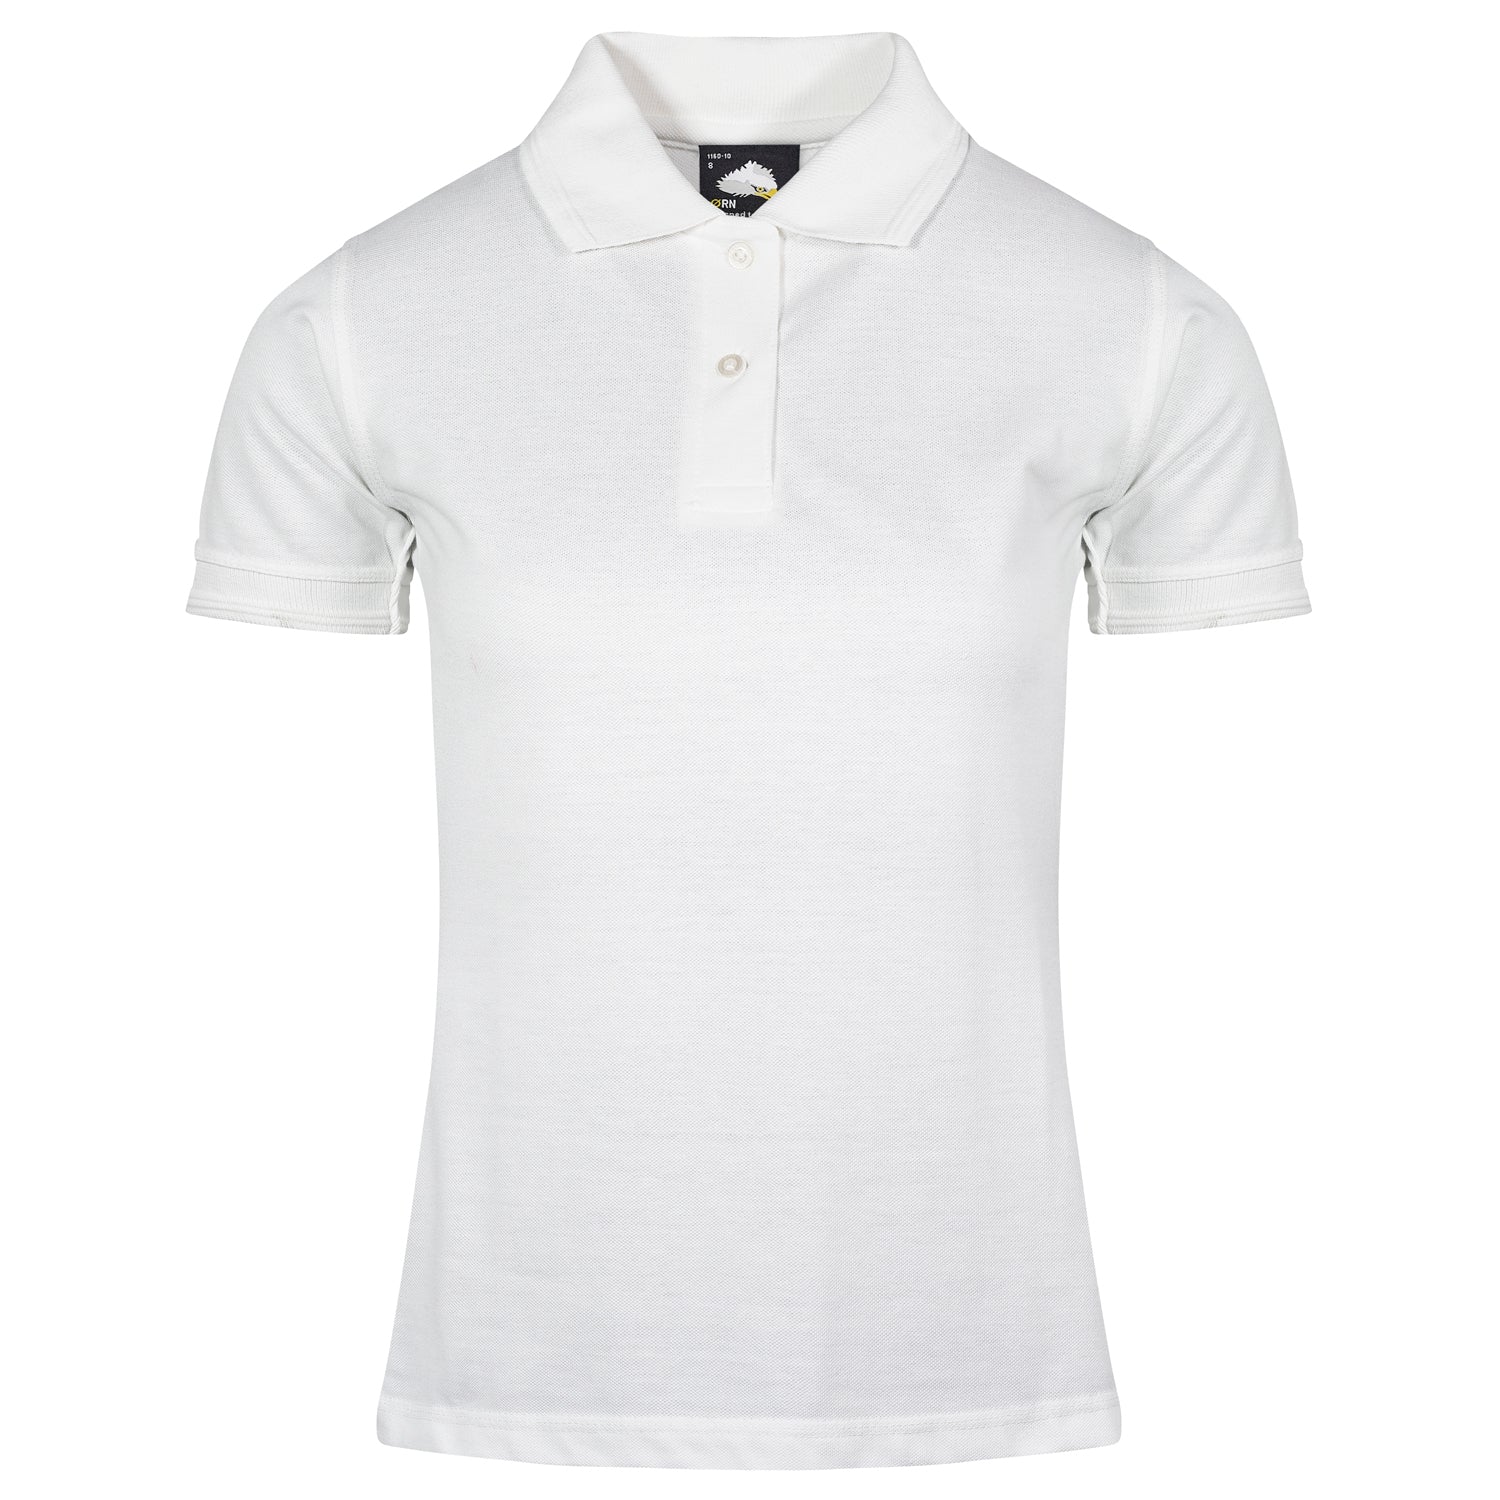 ORN Wren Ladies Poloshirt - White